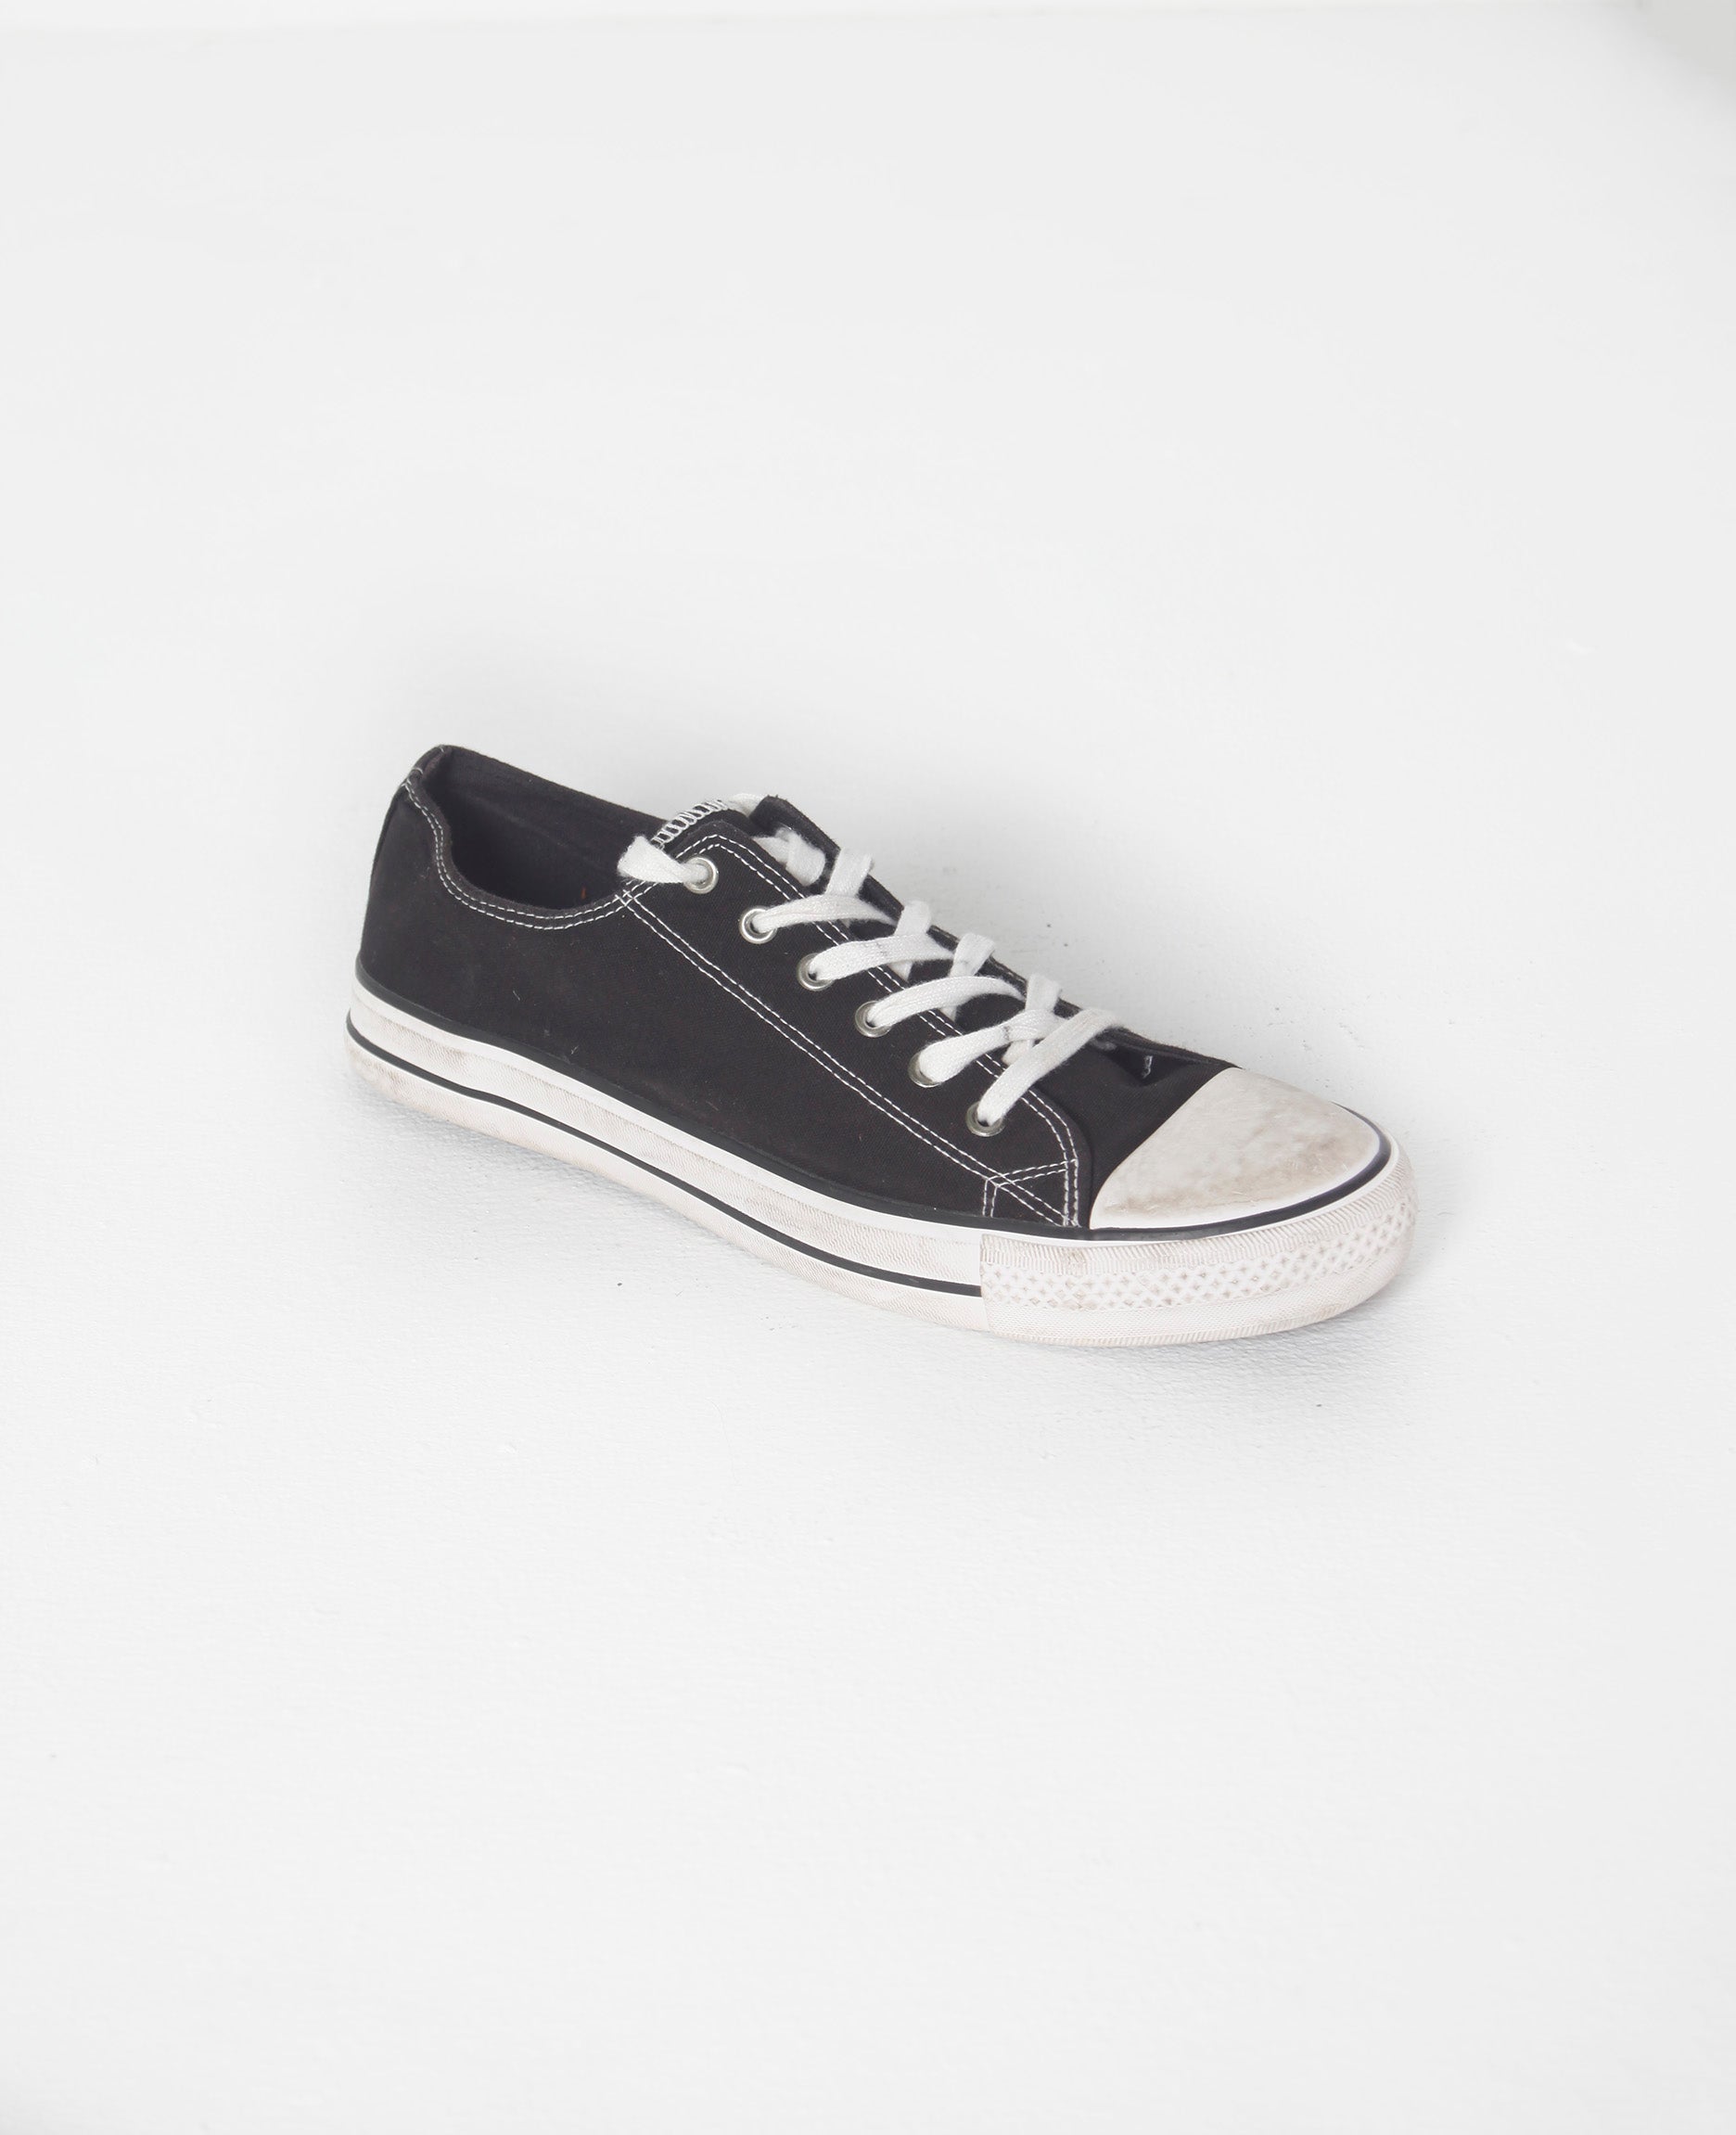 Black/White Lace-Up Sneaker (Eu42)